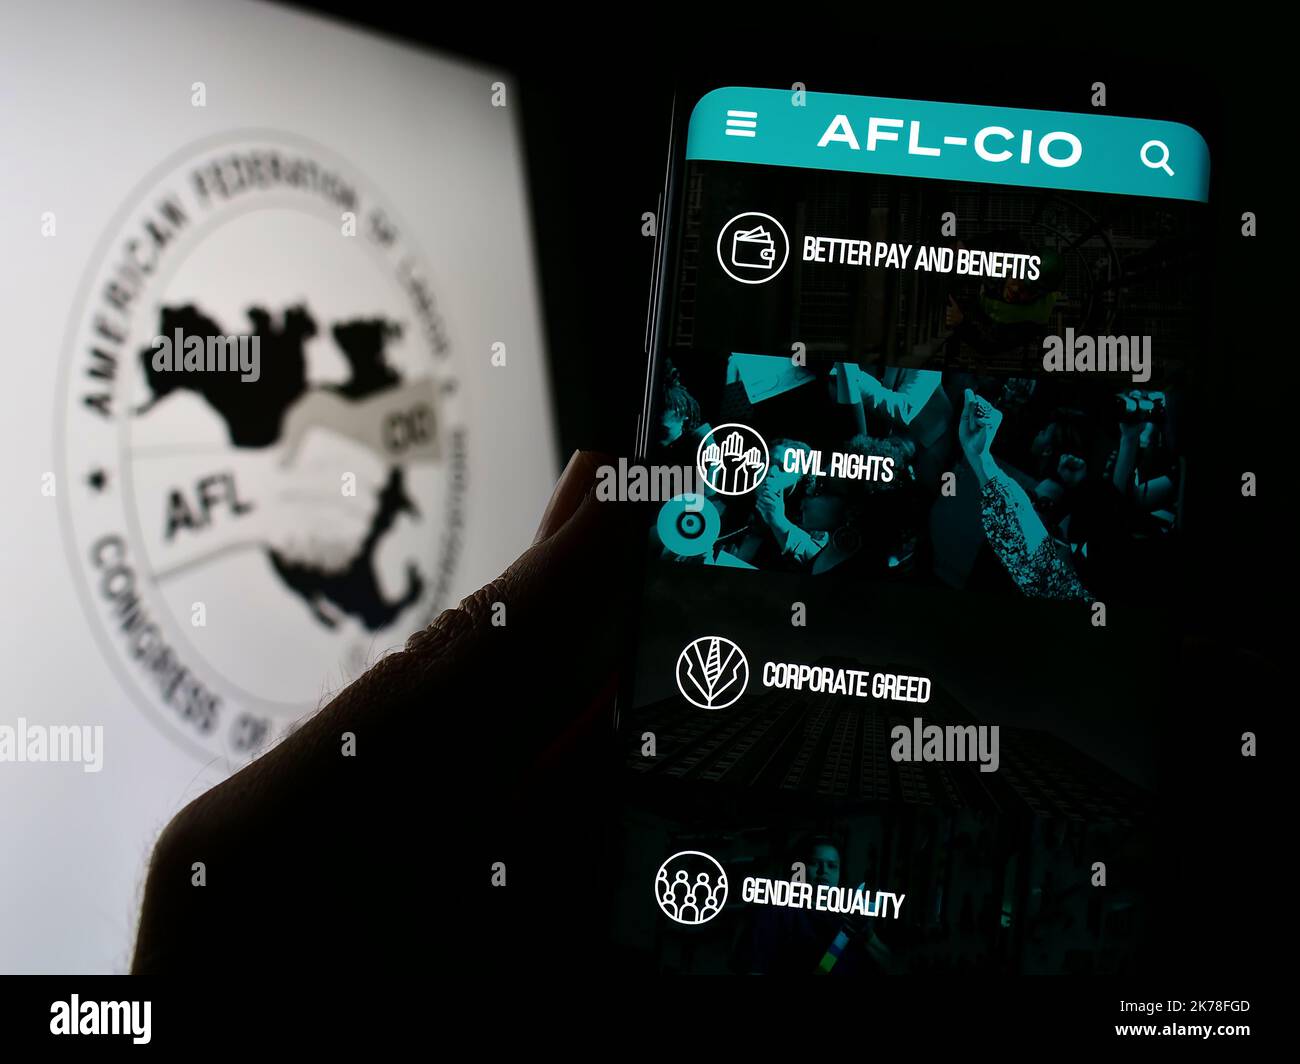 Persona in possesso di cellulare con pagina web della federazione americana AFL-CIO sullo schermo di fronte al logo. Messa a fuoco al centro del display del telefono. Foto Stock